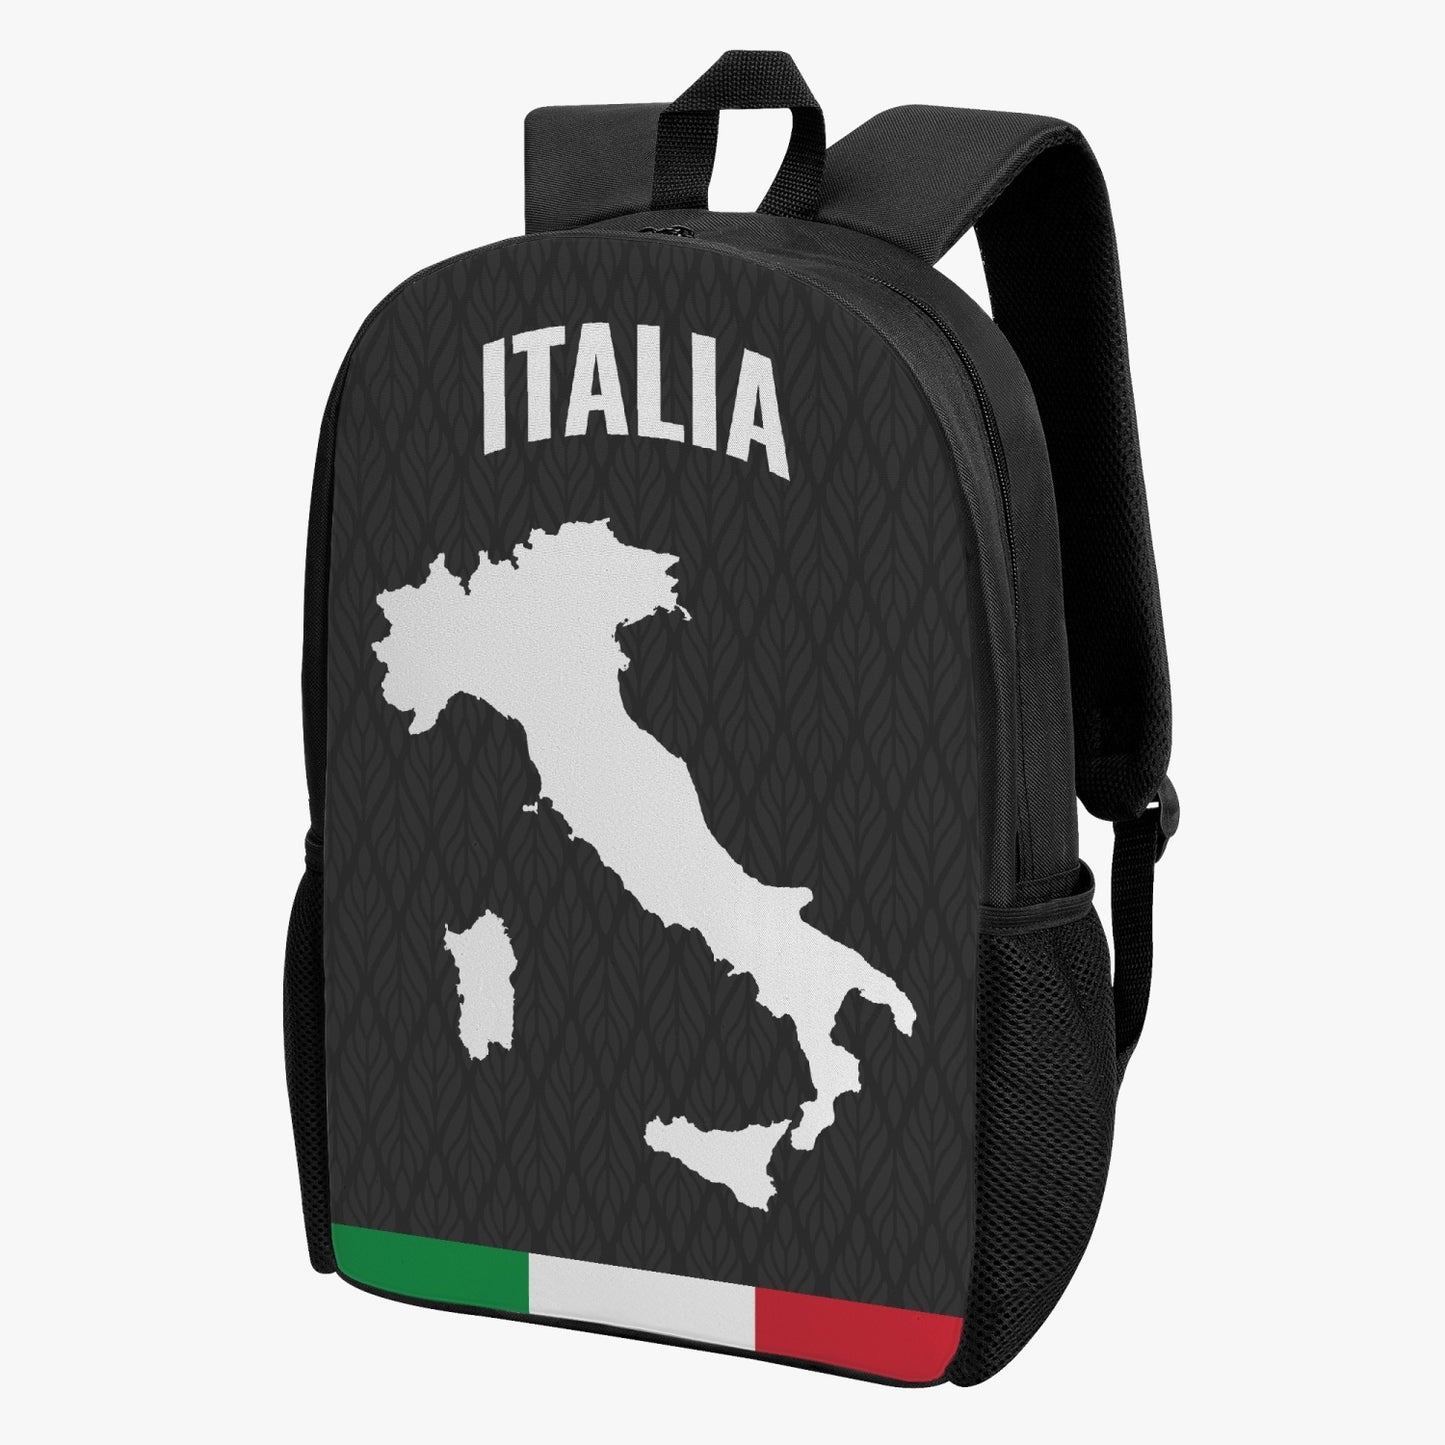 Italy Kid's School Backpack Black